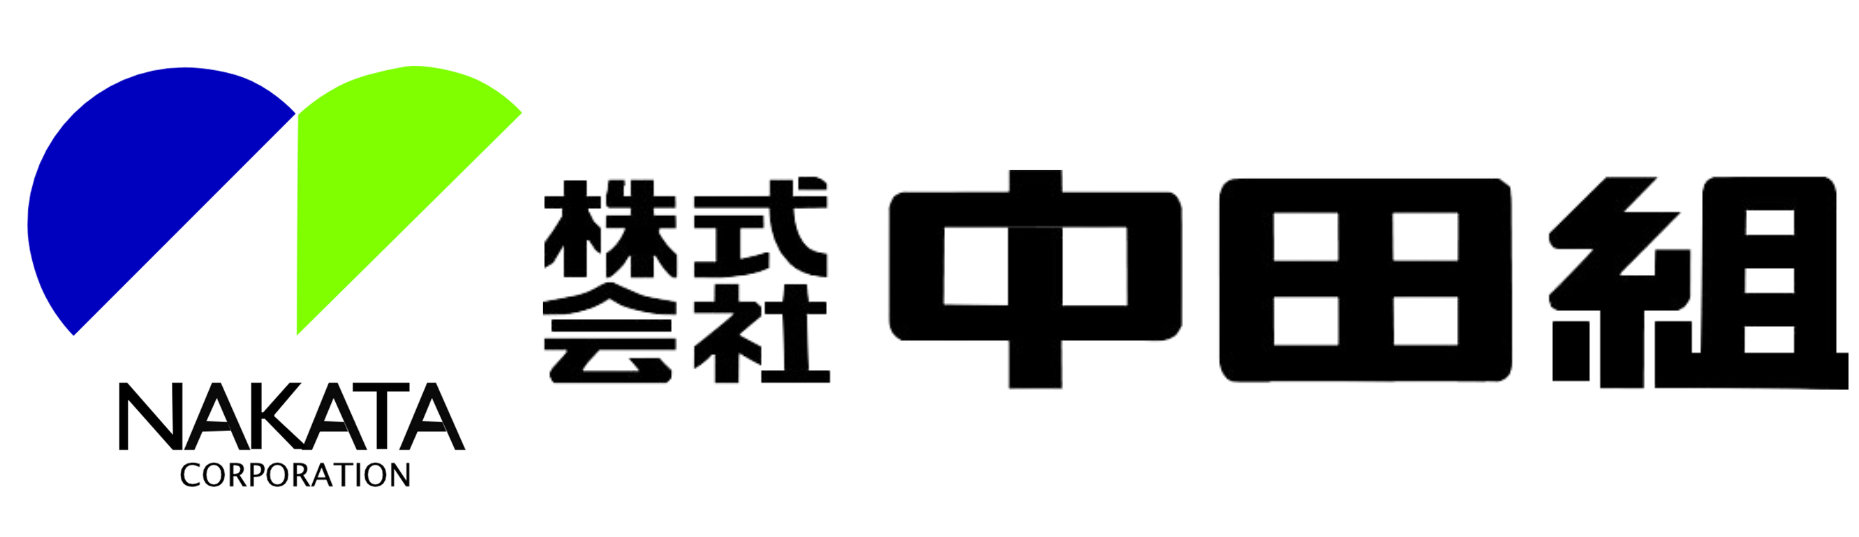 (株)中田組 企業ロゴ.png